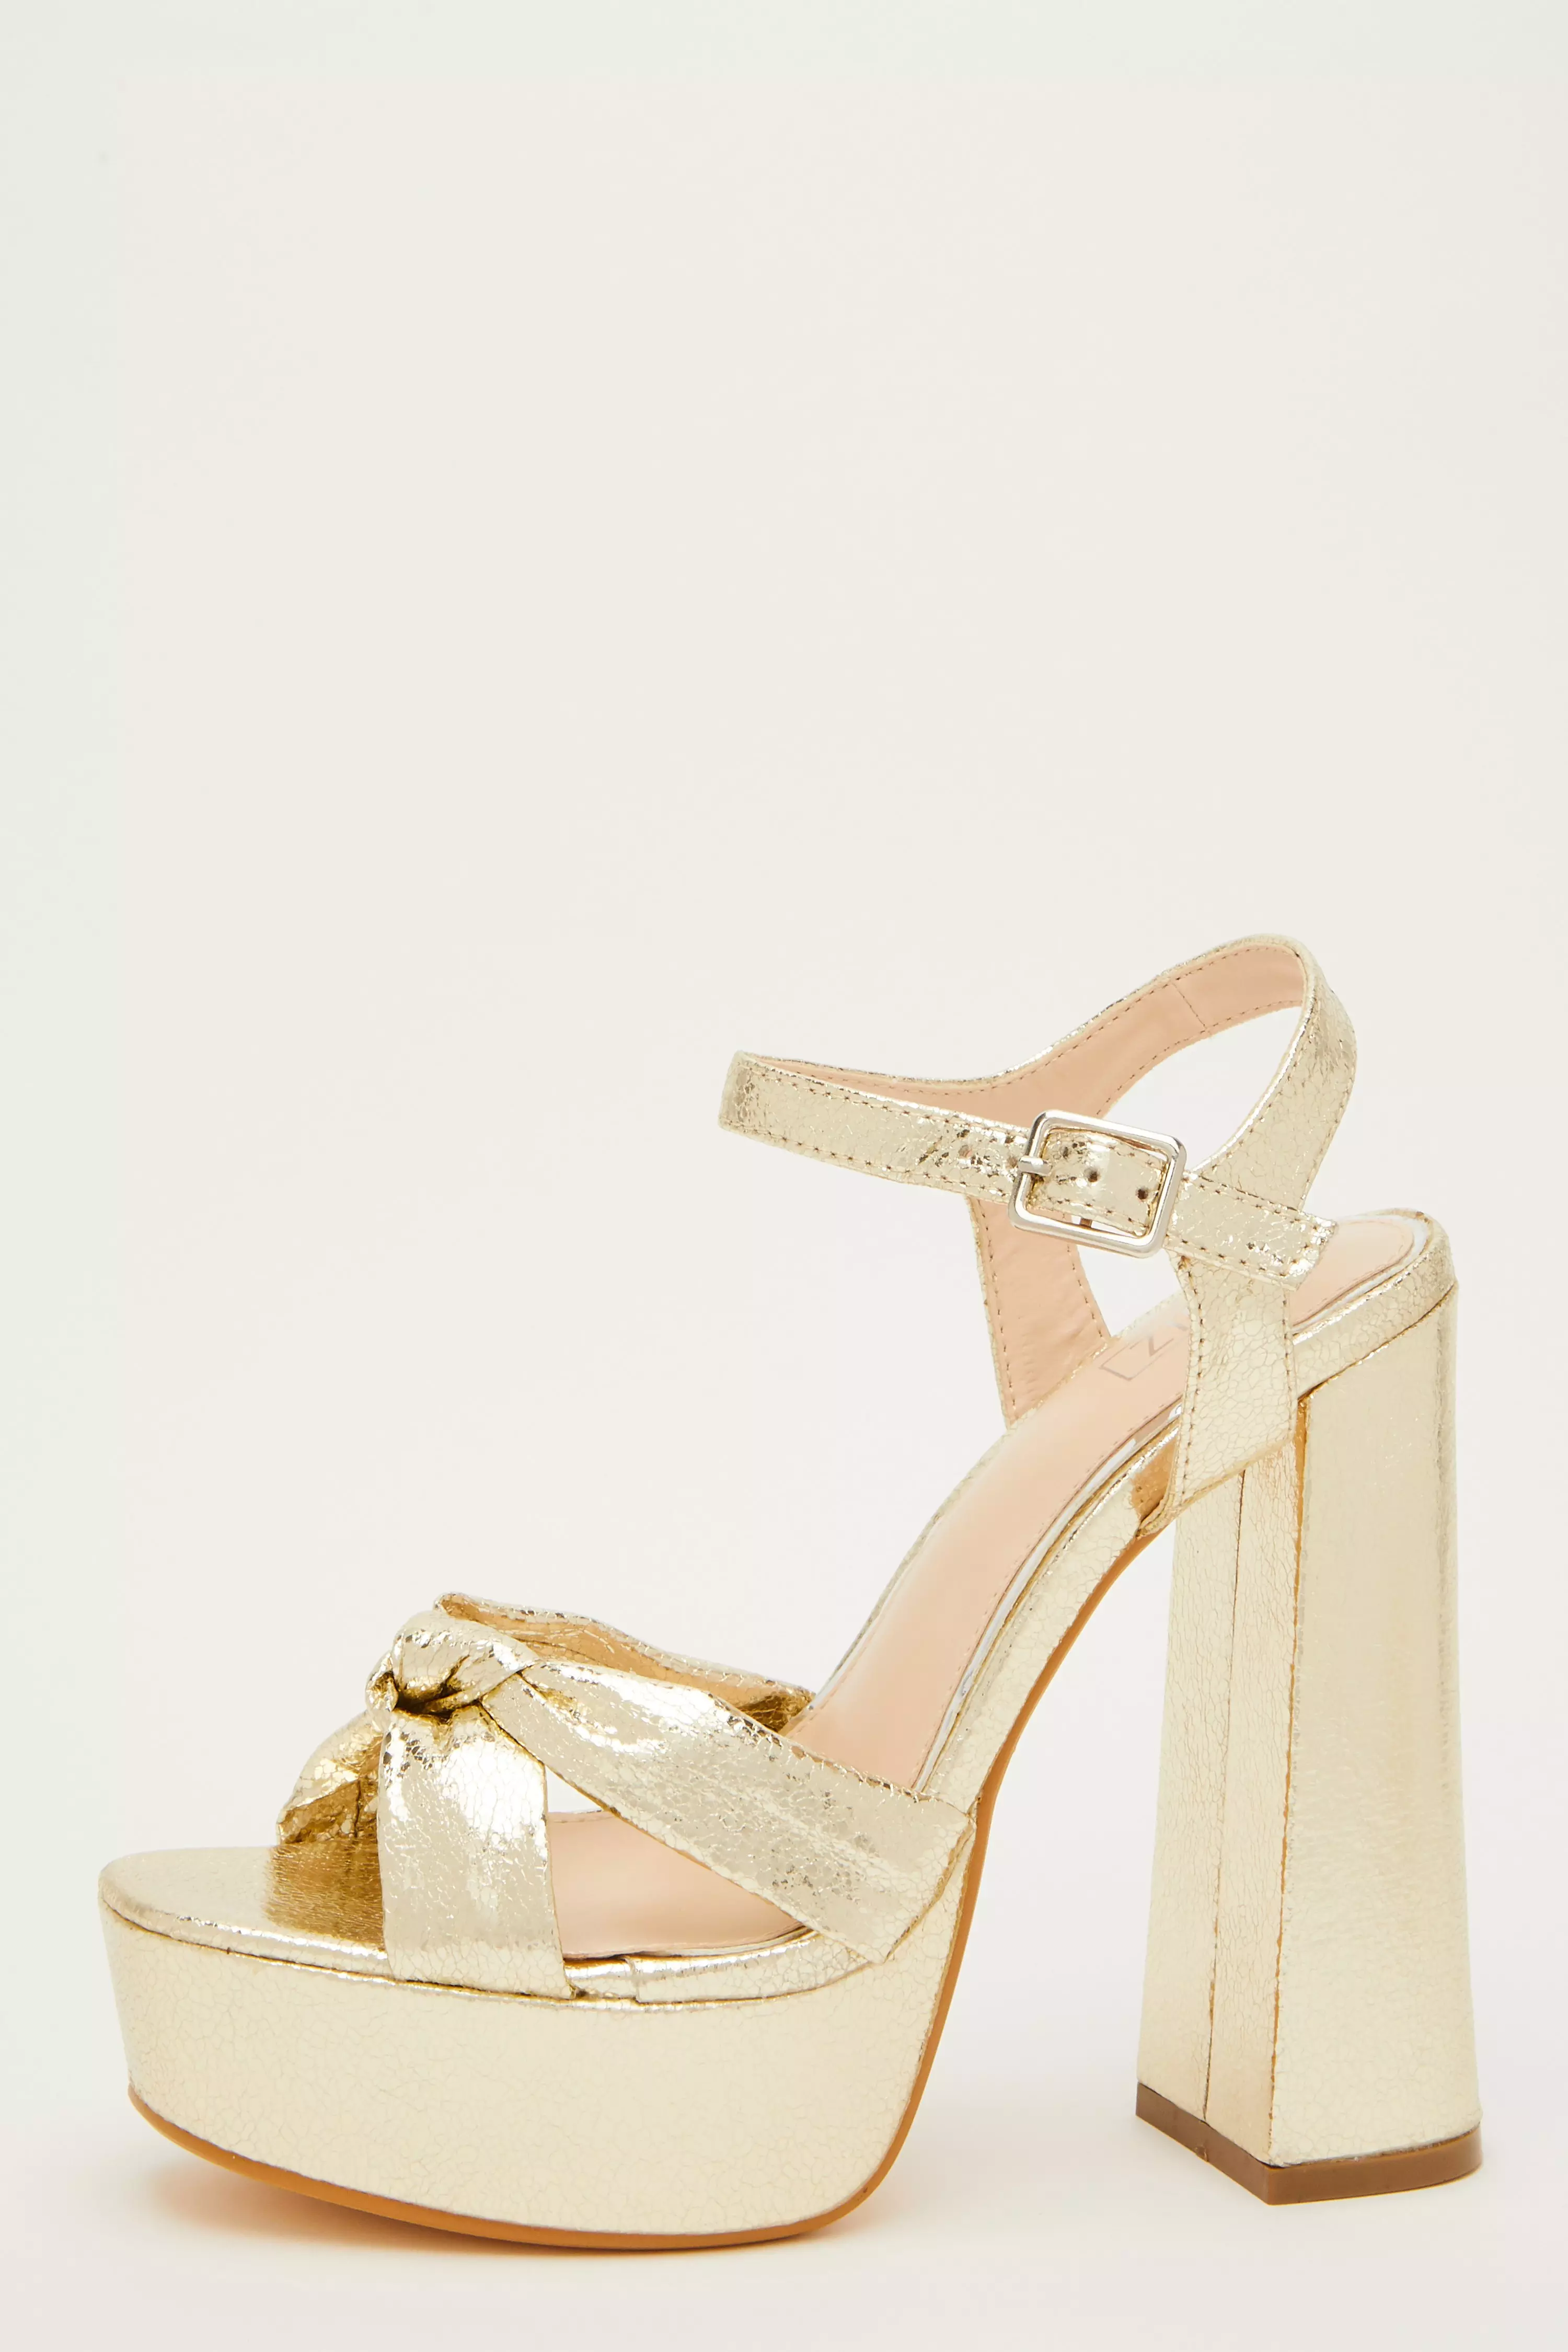 Gold Shimmer Platform Heeled Sandals - QUIZ Clothing